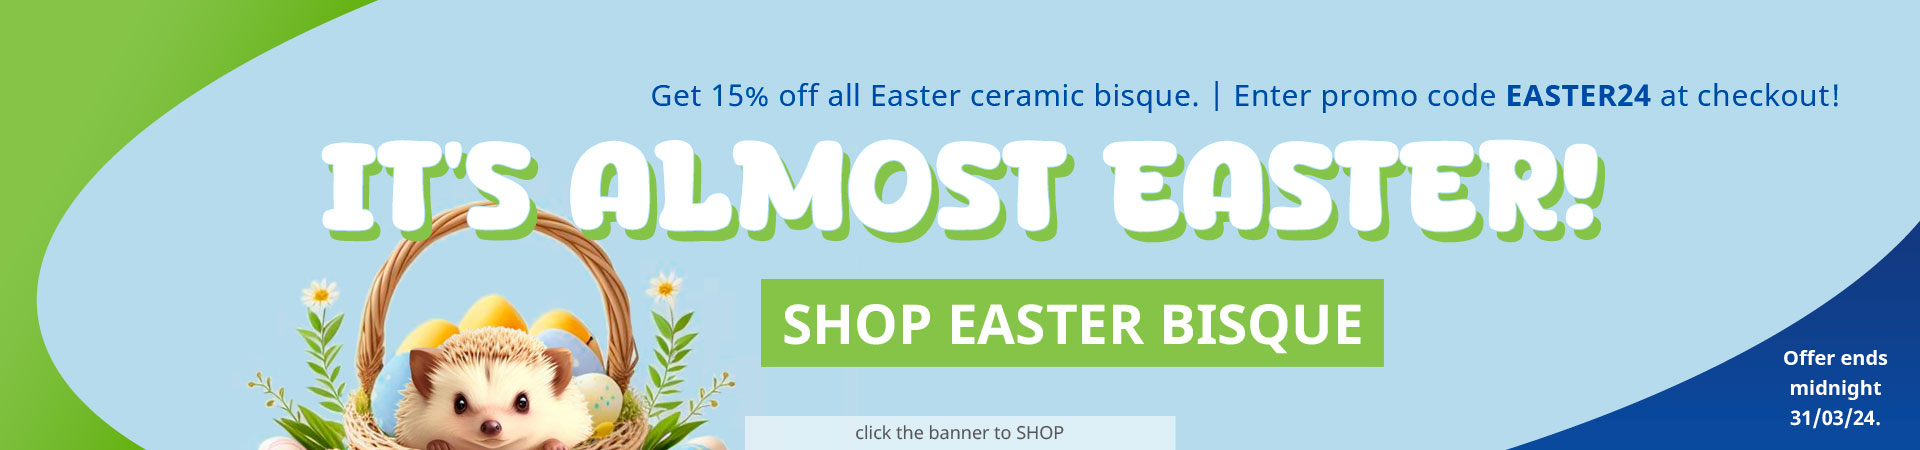 15% Off Easter Ceramic Bisque!